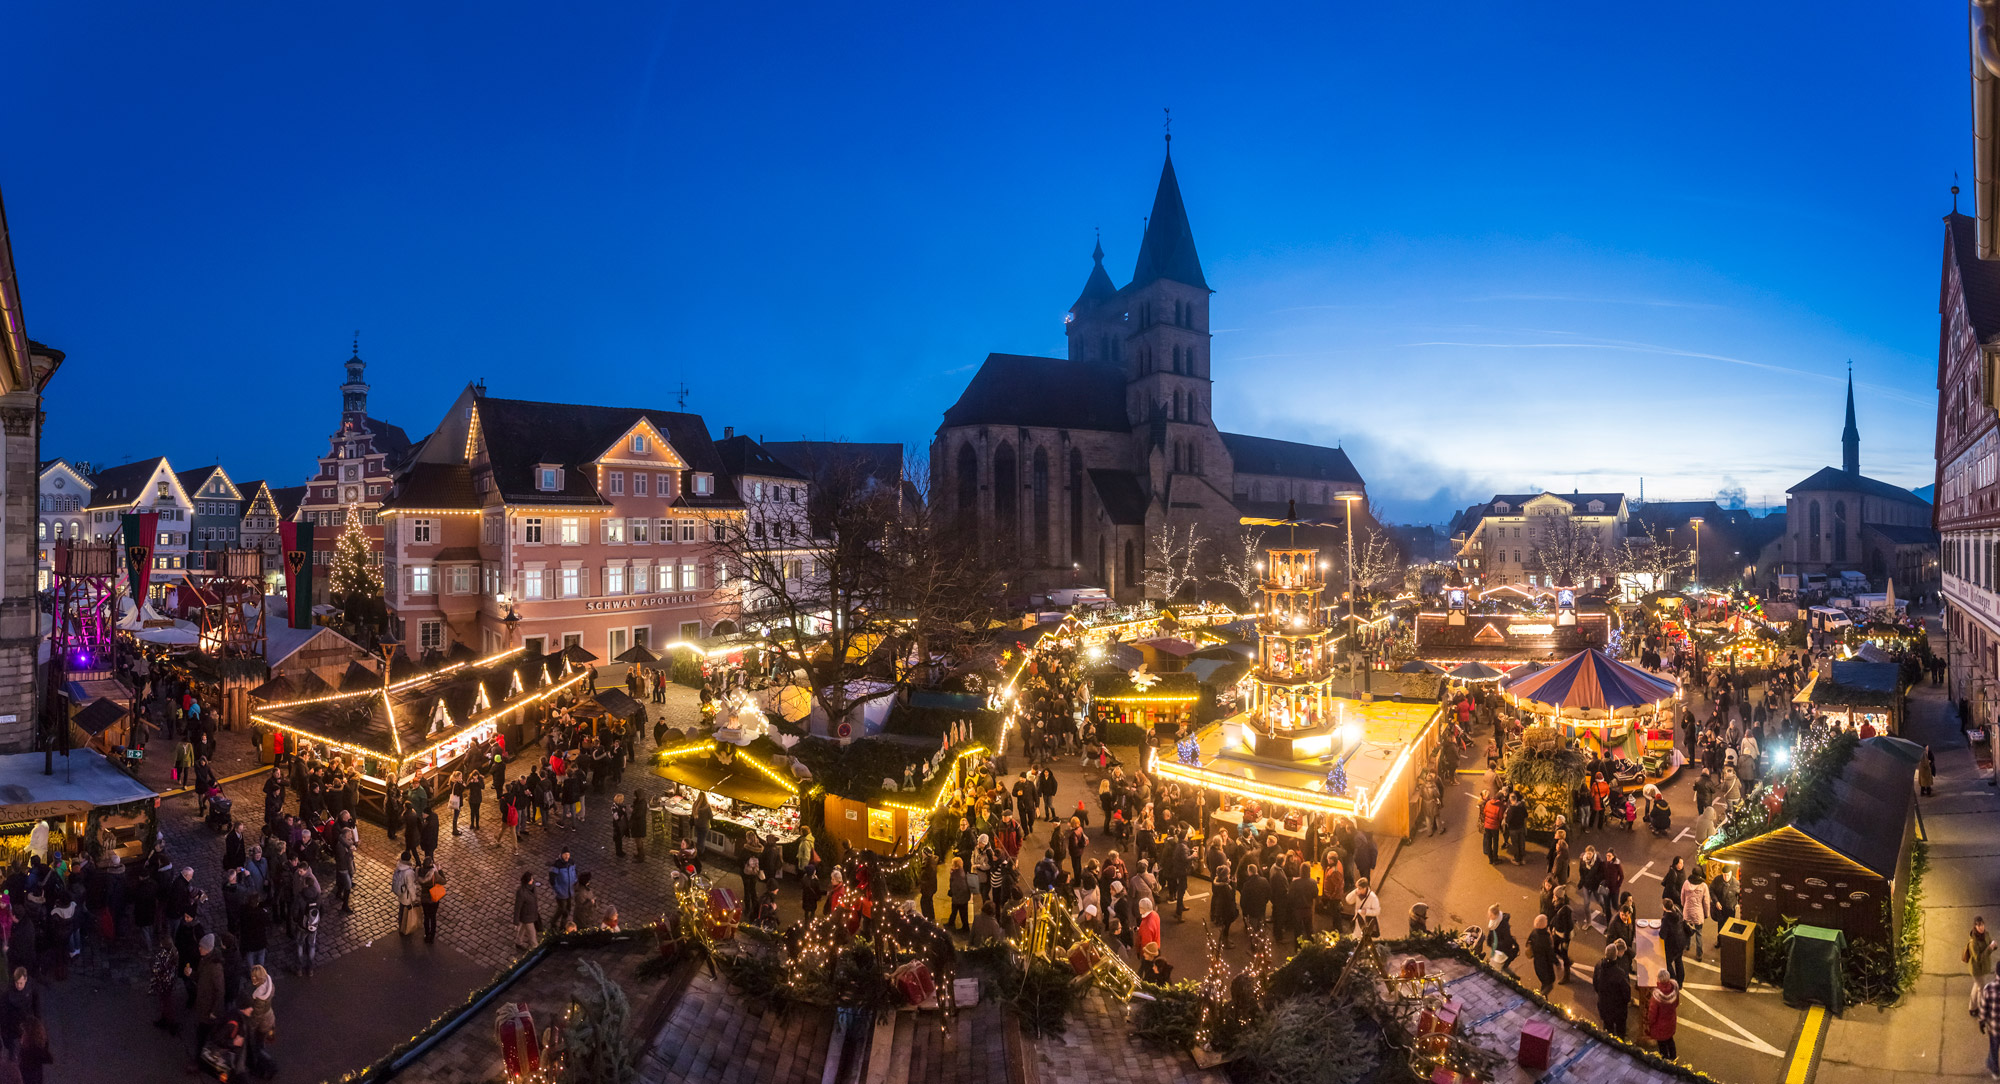 Mittelalter Weihnachtsmarkt in Esslingen - Esslinger Markt & Event GmbH